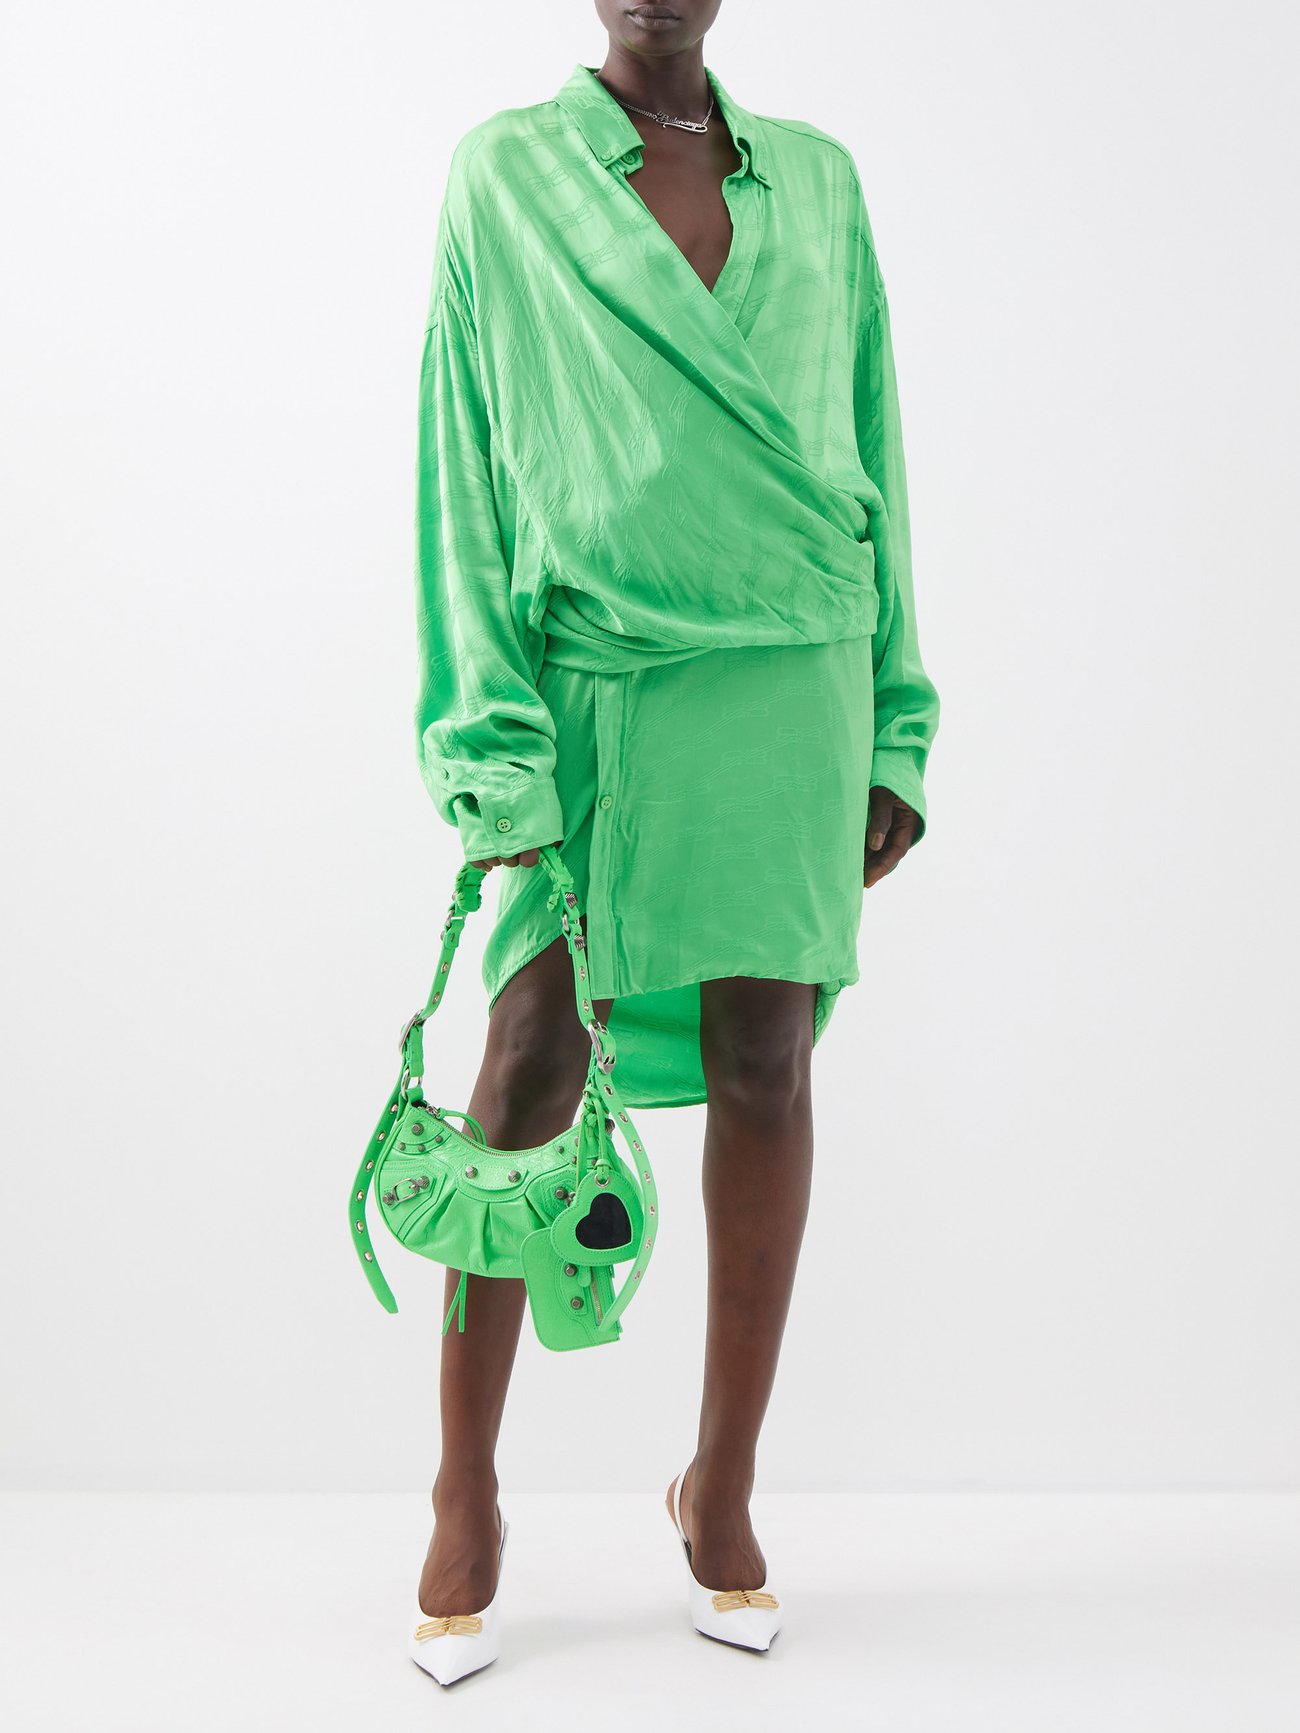 Balenciaga Le Cagole XS Shoulder Bag In Green 6713091VG9Y3809 - Handbags -  Jomashop